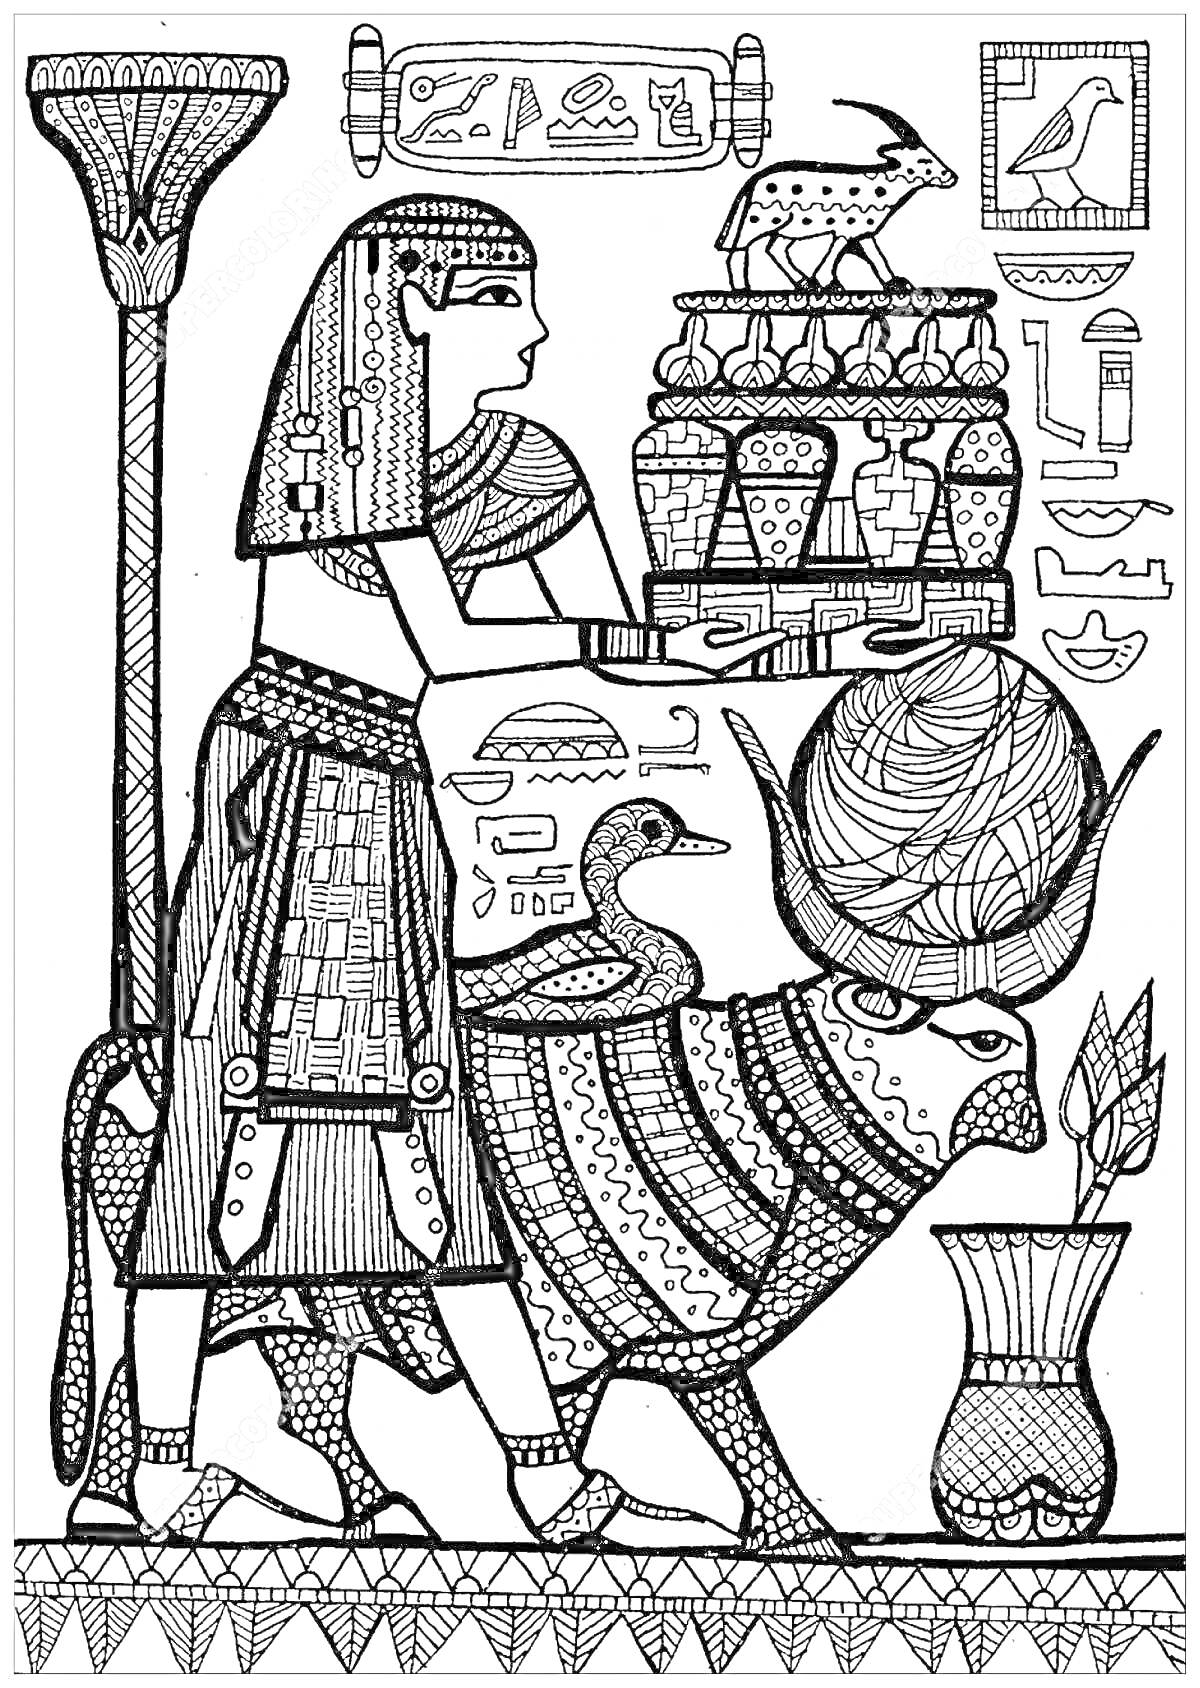 Древний египтянин с даниным сосудом, бык, фрагменты рисунков древнеегипетских символов и иероглифов